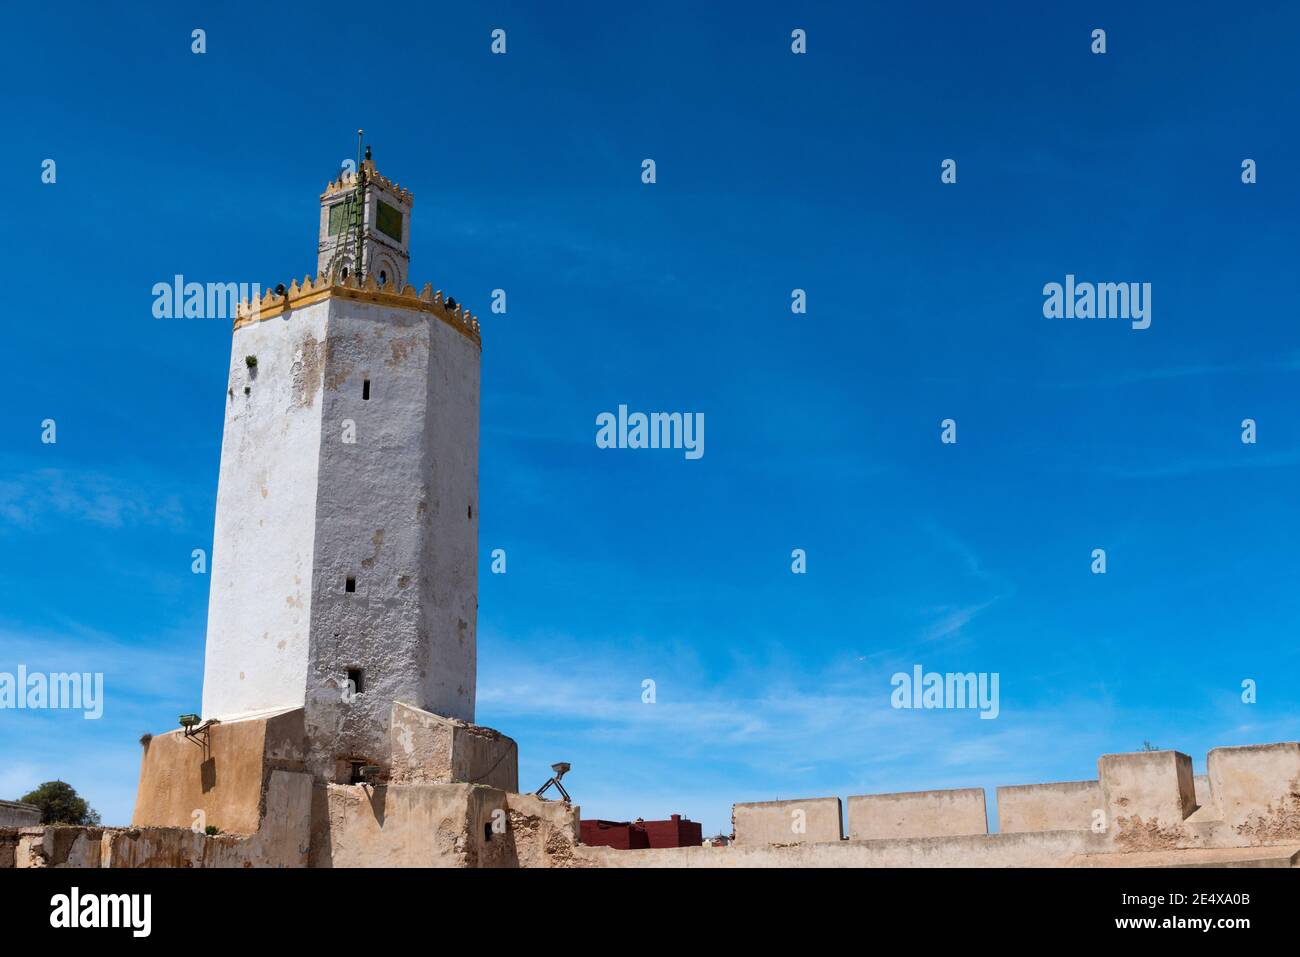 Il Minareto della città portoghese di Mazagan, nella città costiera di El Jadida, Marocco, Africa del Nord. Foto Stock